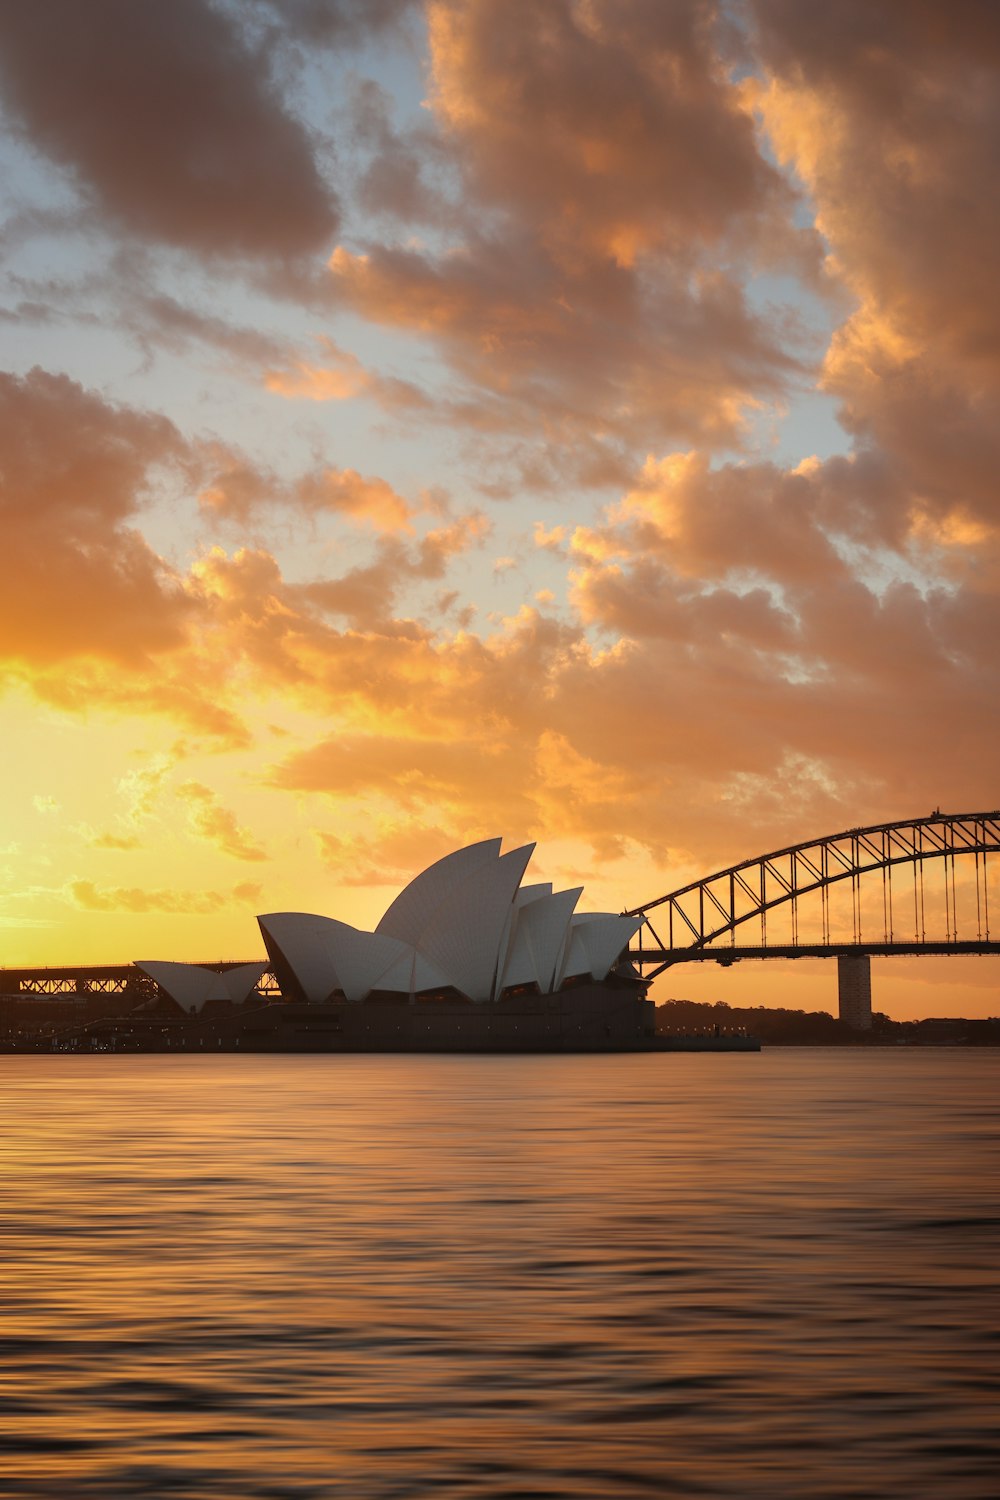 sydney opera house sydney australia during sunset